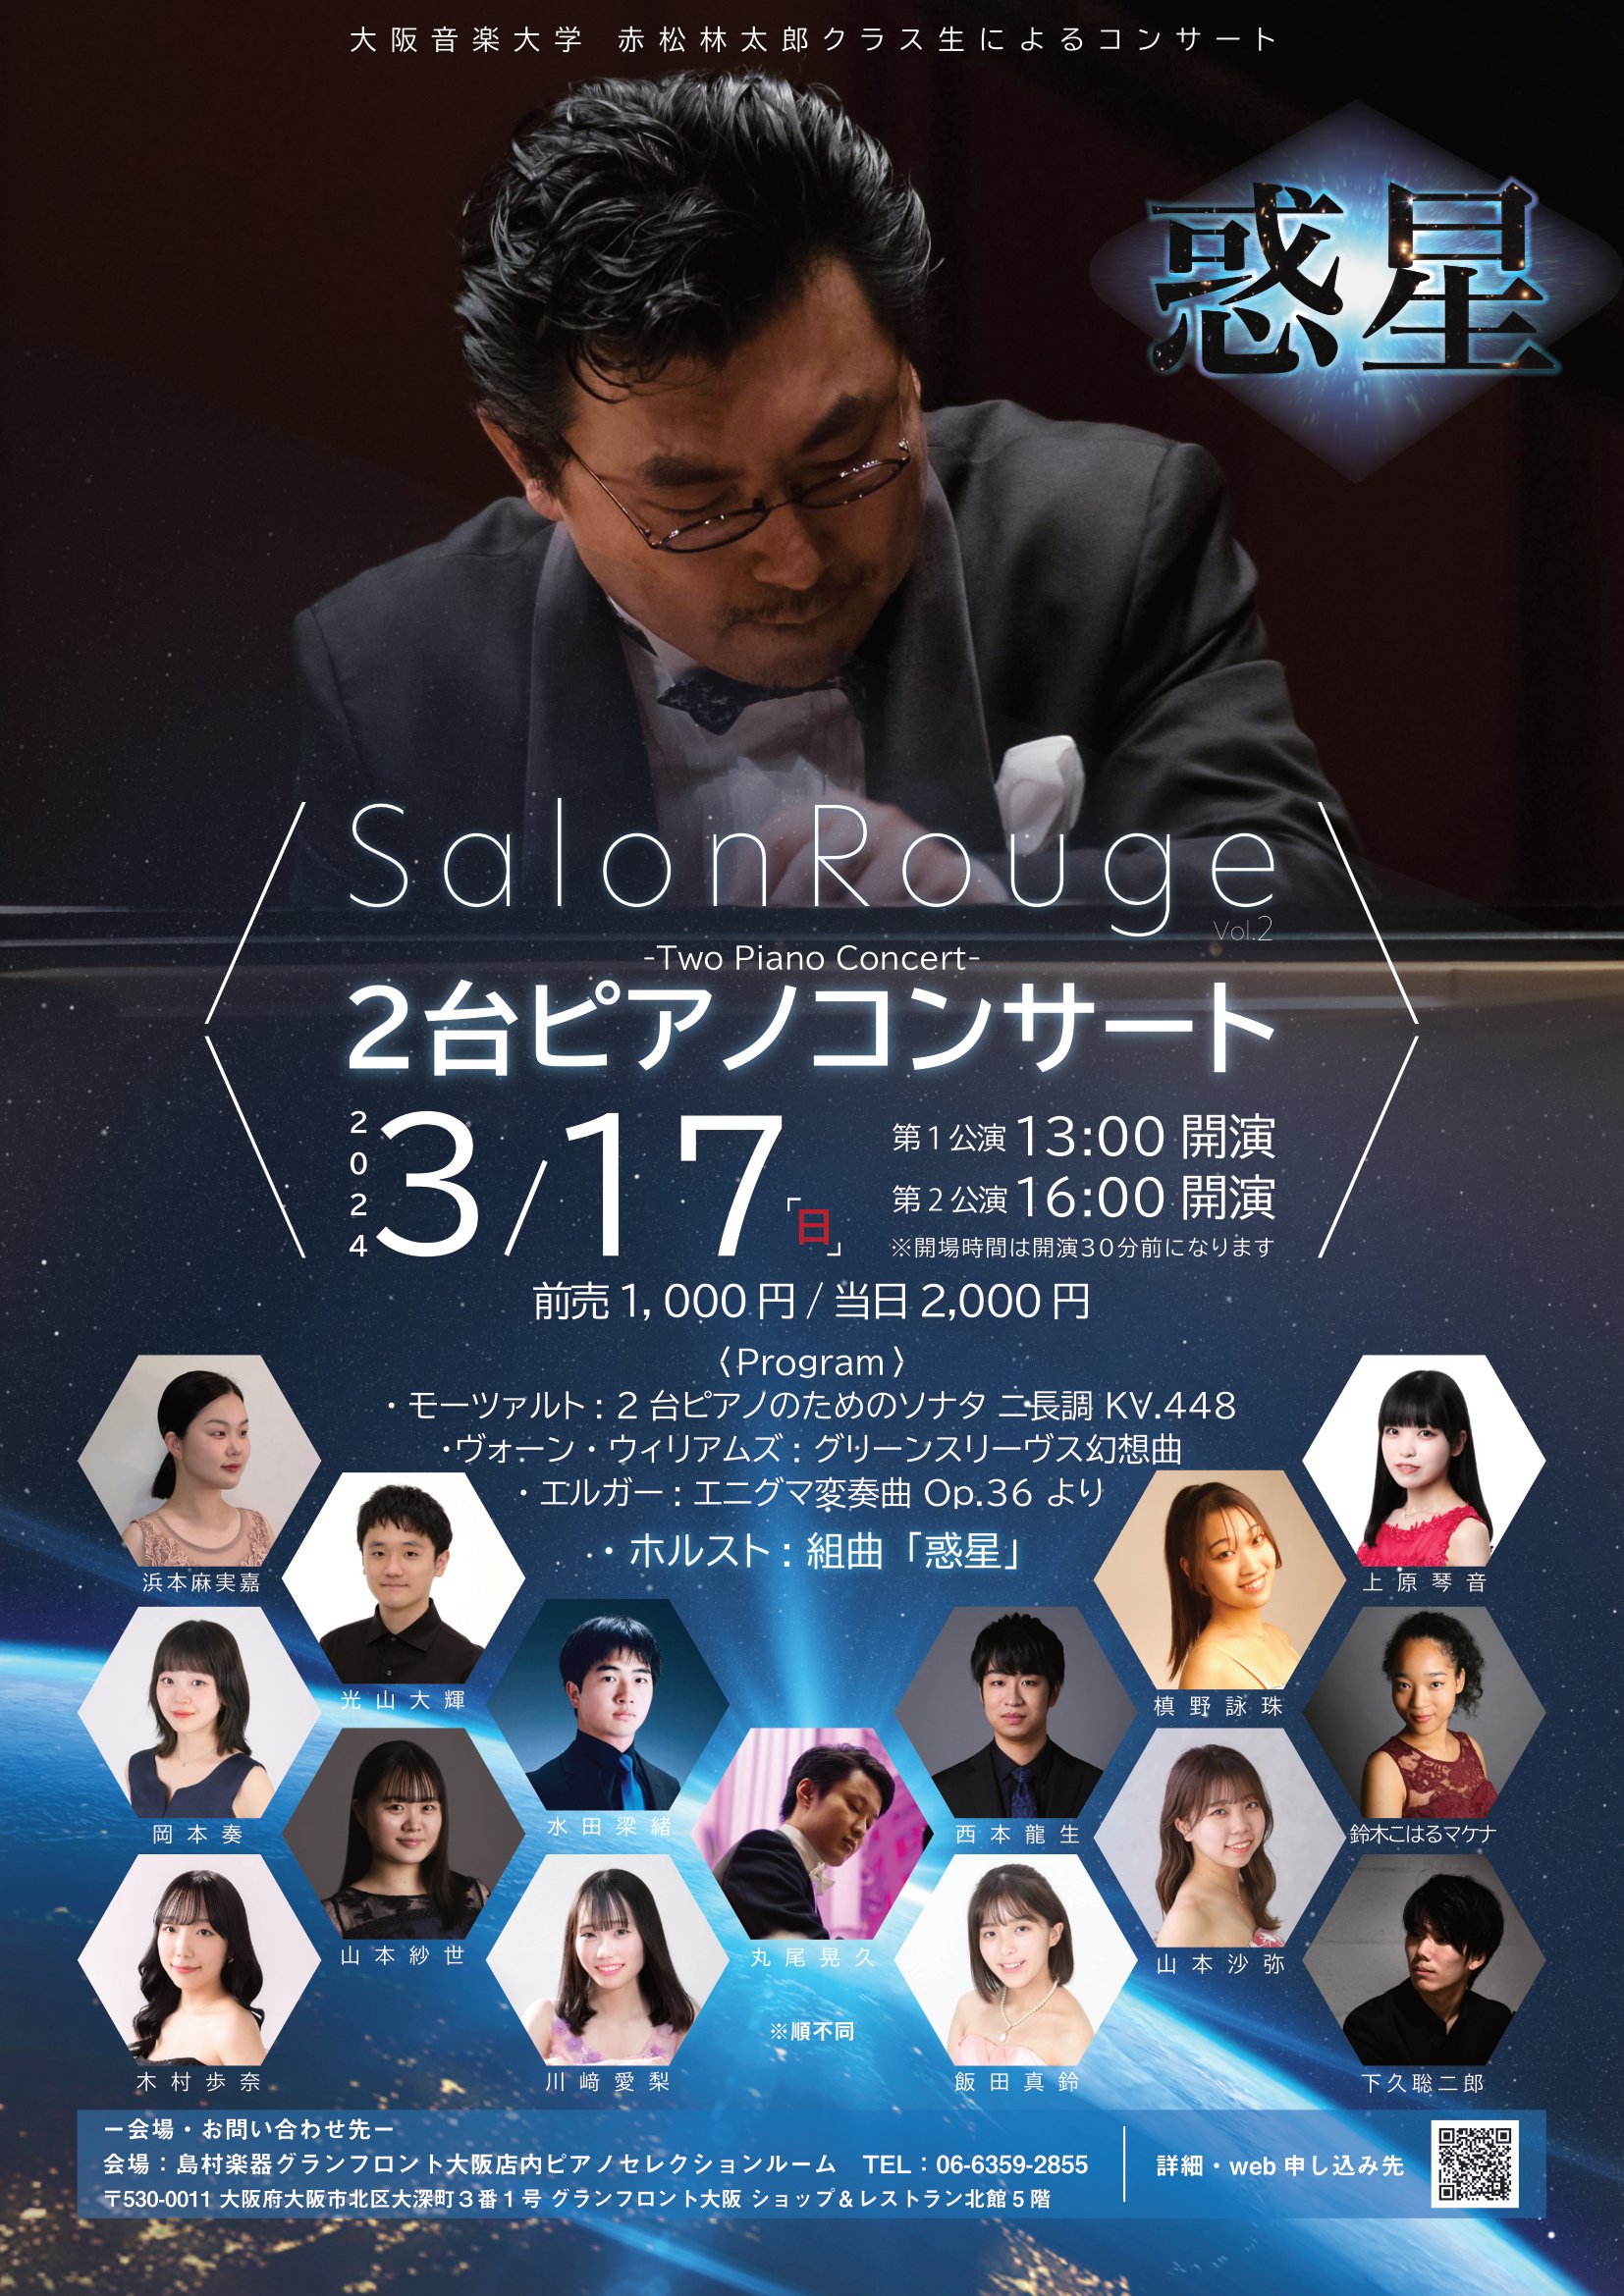 大阪音楽大学、ピアノ准教授赤松林太郎クラス生によるピアノコンサートを開催いたします。 Salon Rouge　の世界へようこそ...　 私たちは、赤松先生のクラス生として出会いました。共に学んだ時間は絆となり、それは音楽の育みにも繋がり、今かけがえのない時間を過ごしています。コンサートでは、皆さまに […]